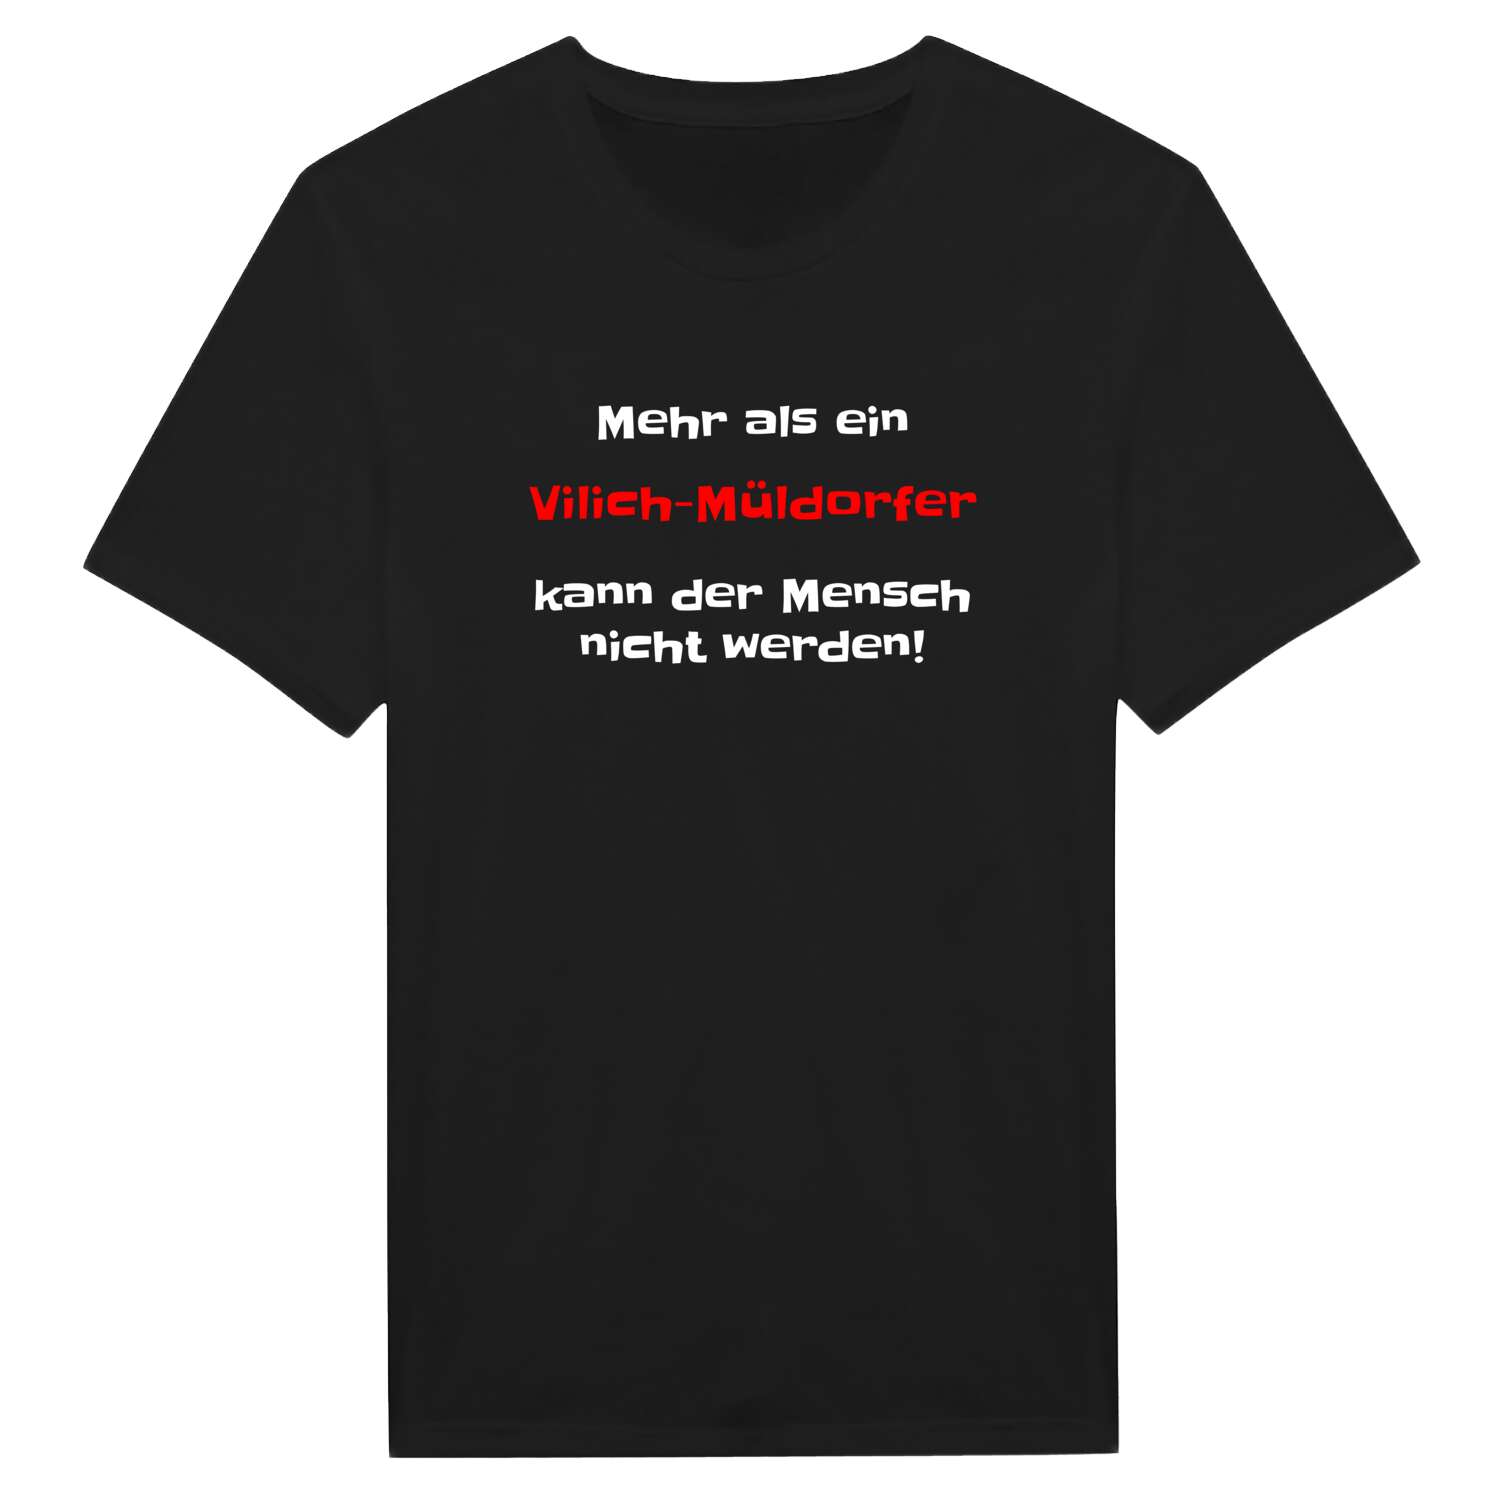 Vilich-Müldorf T-Shirt »Mehr als ein«